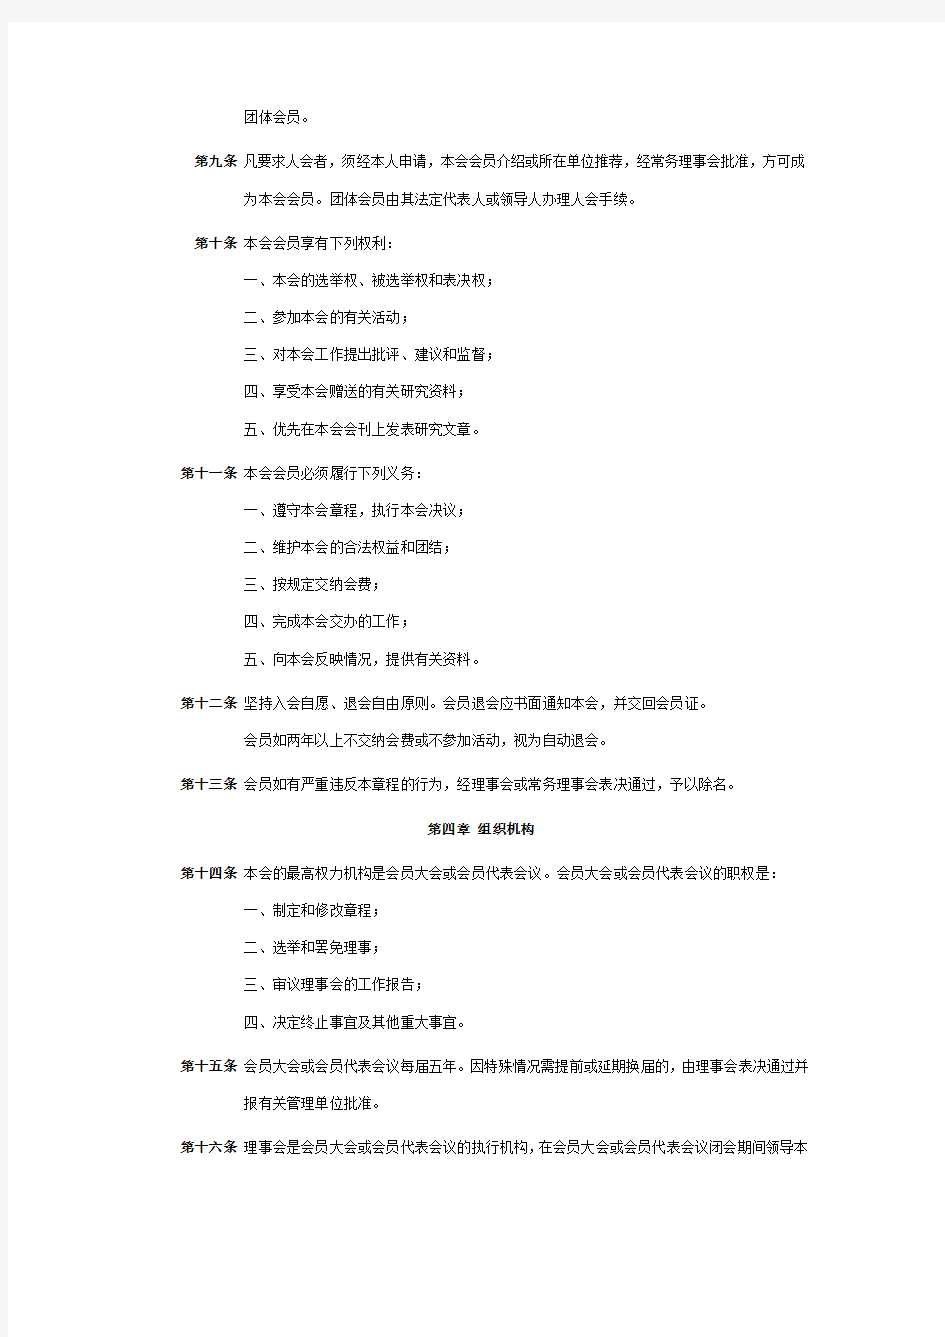 桂林龙脊茶文化研究会章程